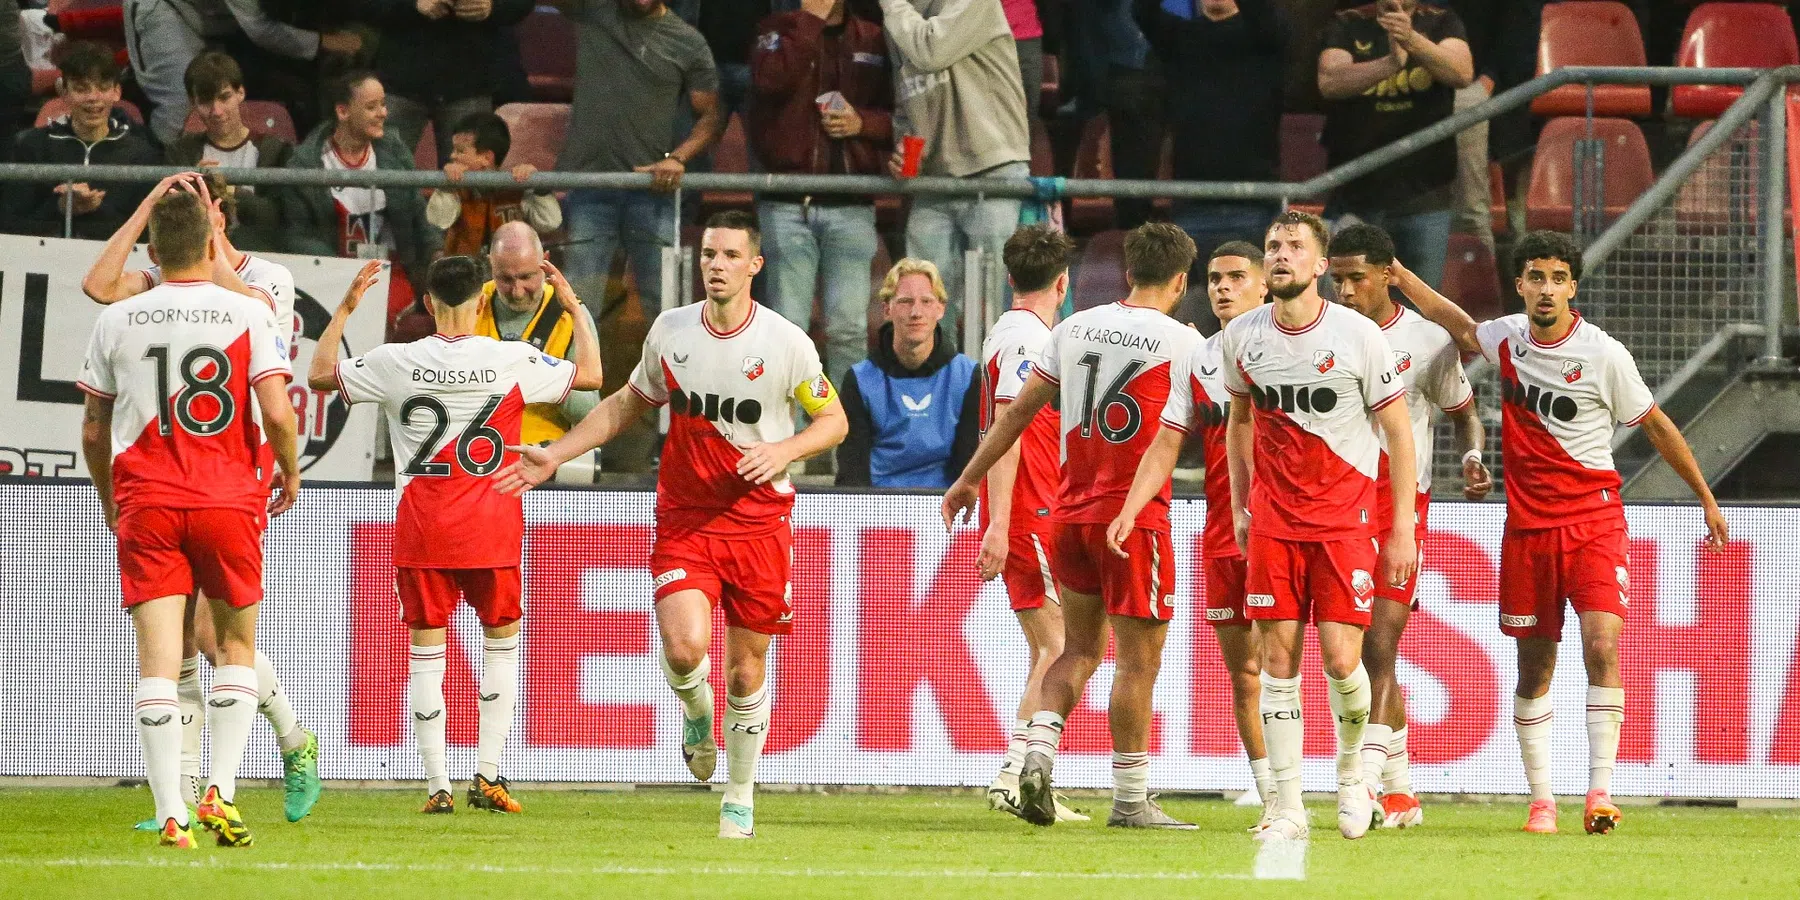 Utrecht rekent af met Sparta en treft Go Ahead in finale play-offs